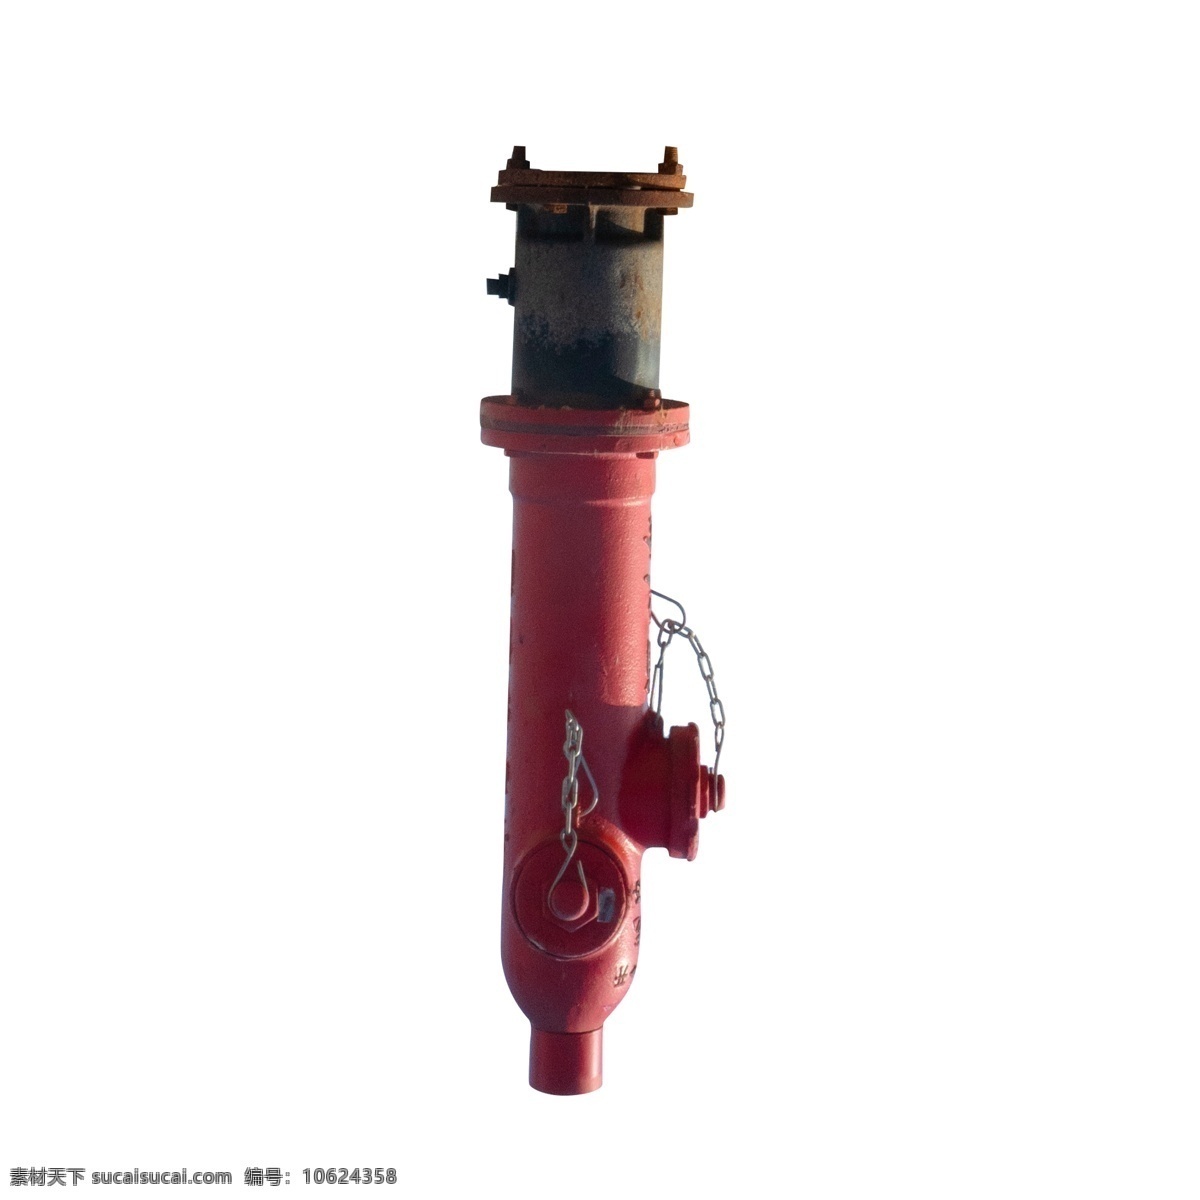 红色 消防栓 倒影 元素 红色高 纹理 金属 圆柱体 立体 链子 光泽 真实 螺丝 质感 安全 开关